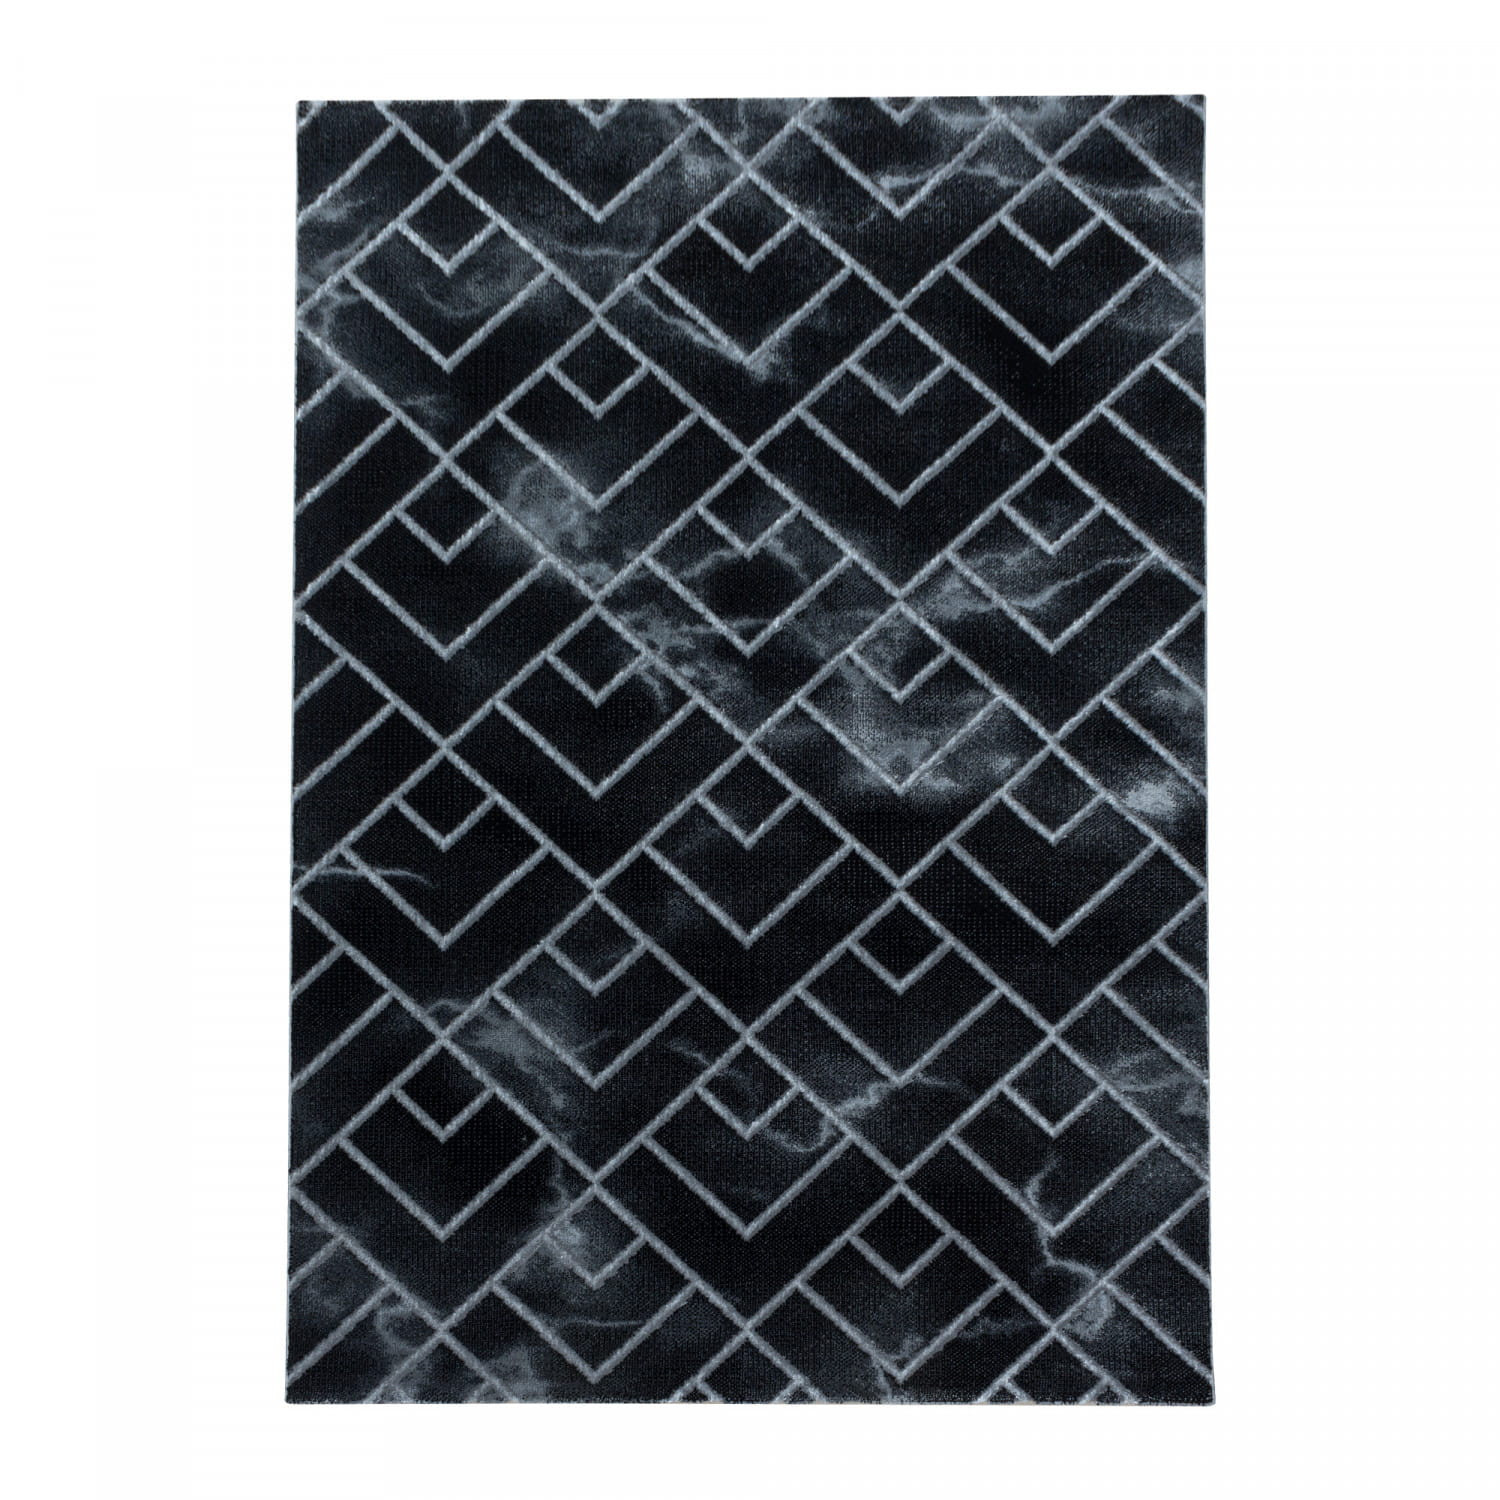 Koberec Naxos mozaika hnědo-šedý